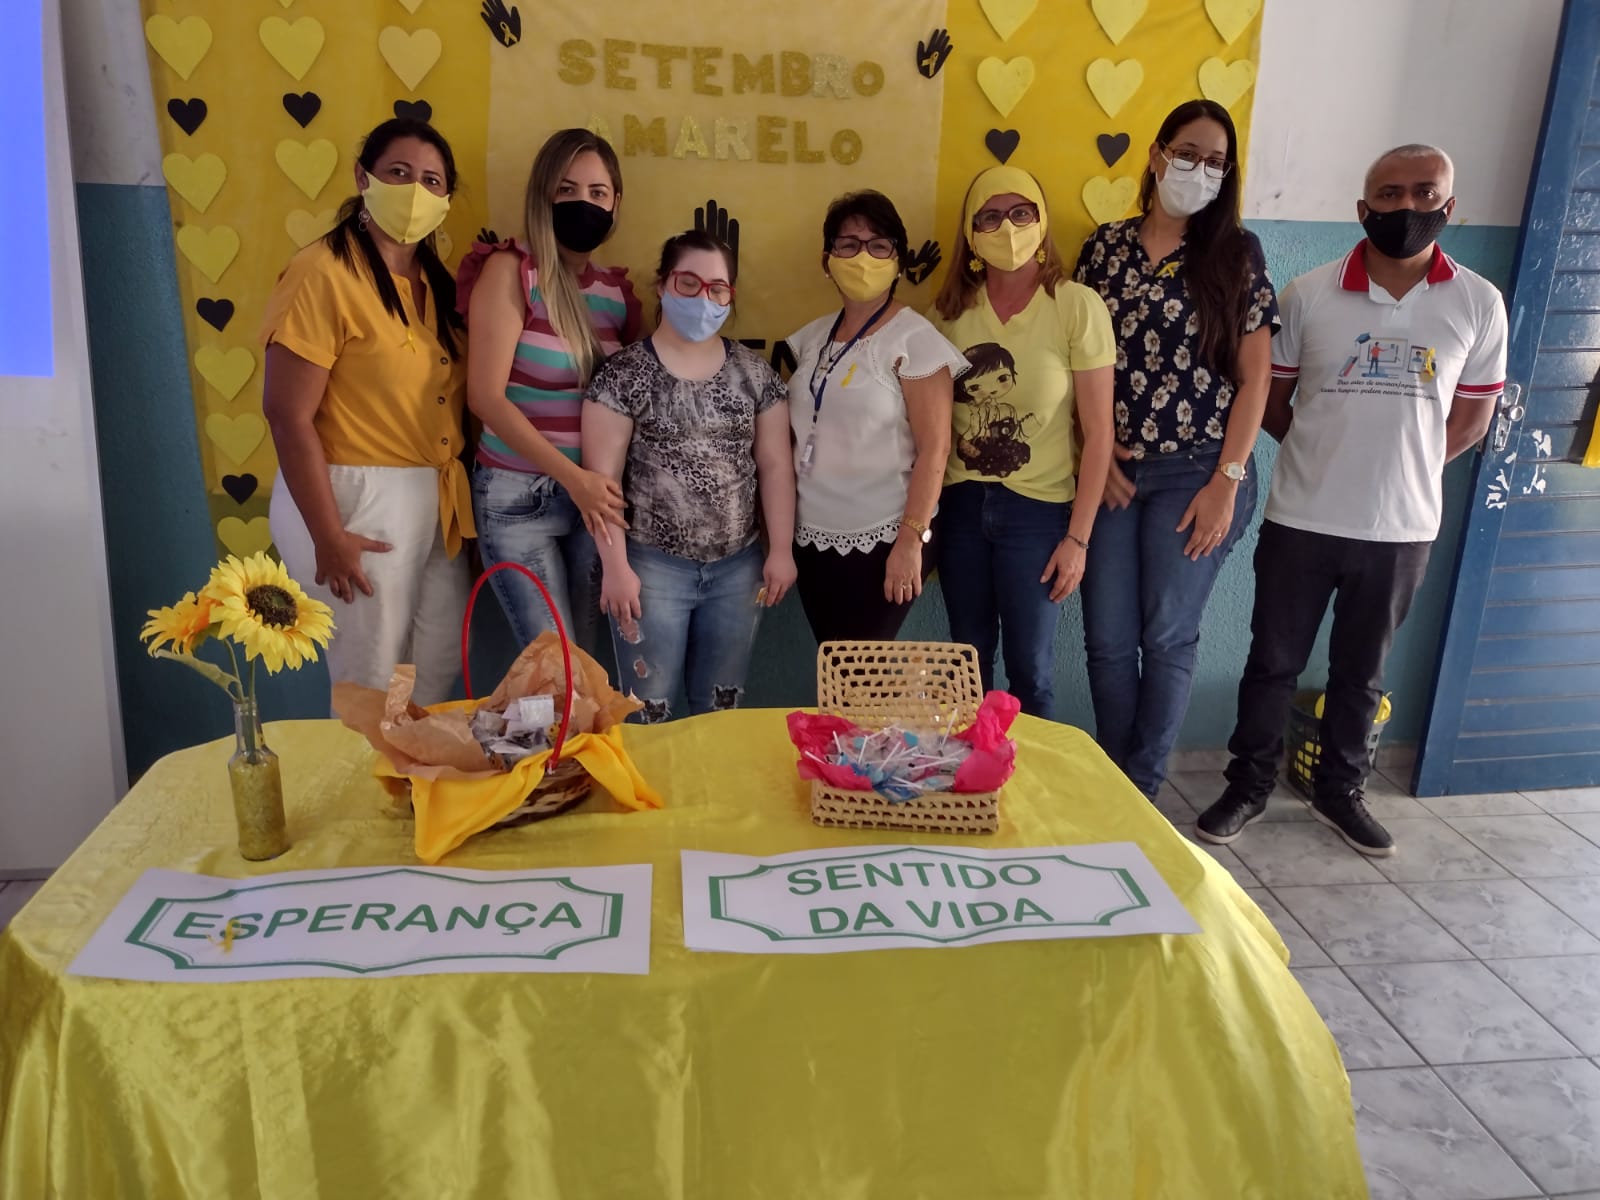 Profissionais da educação de Juarez Távora participam de palestra em alusão ao Setembro Amarelo